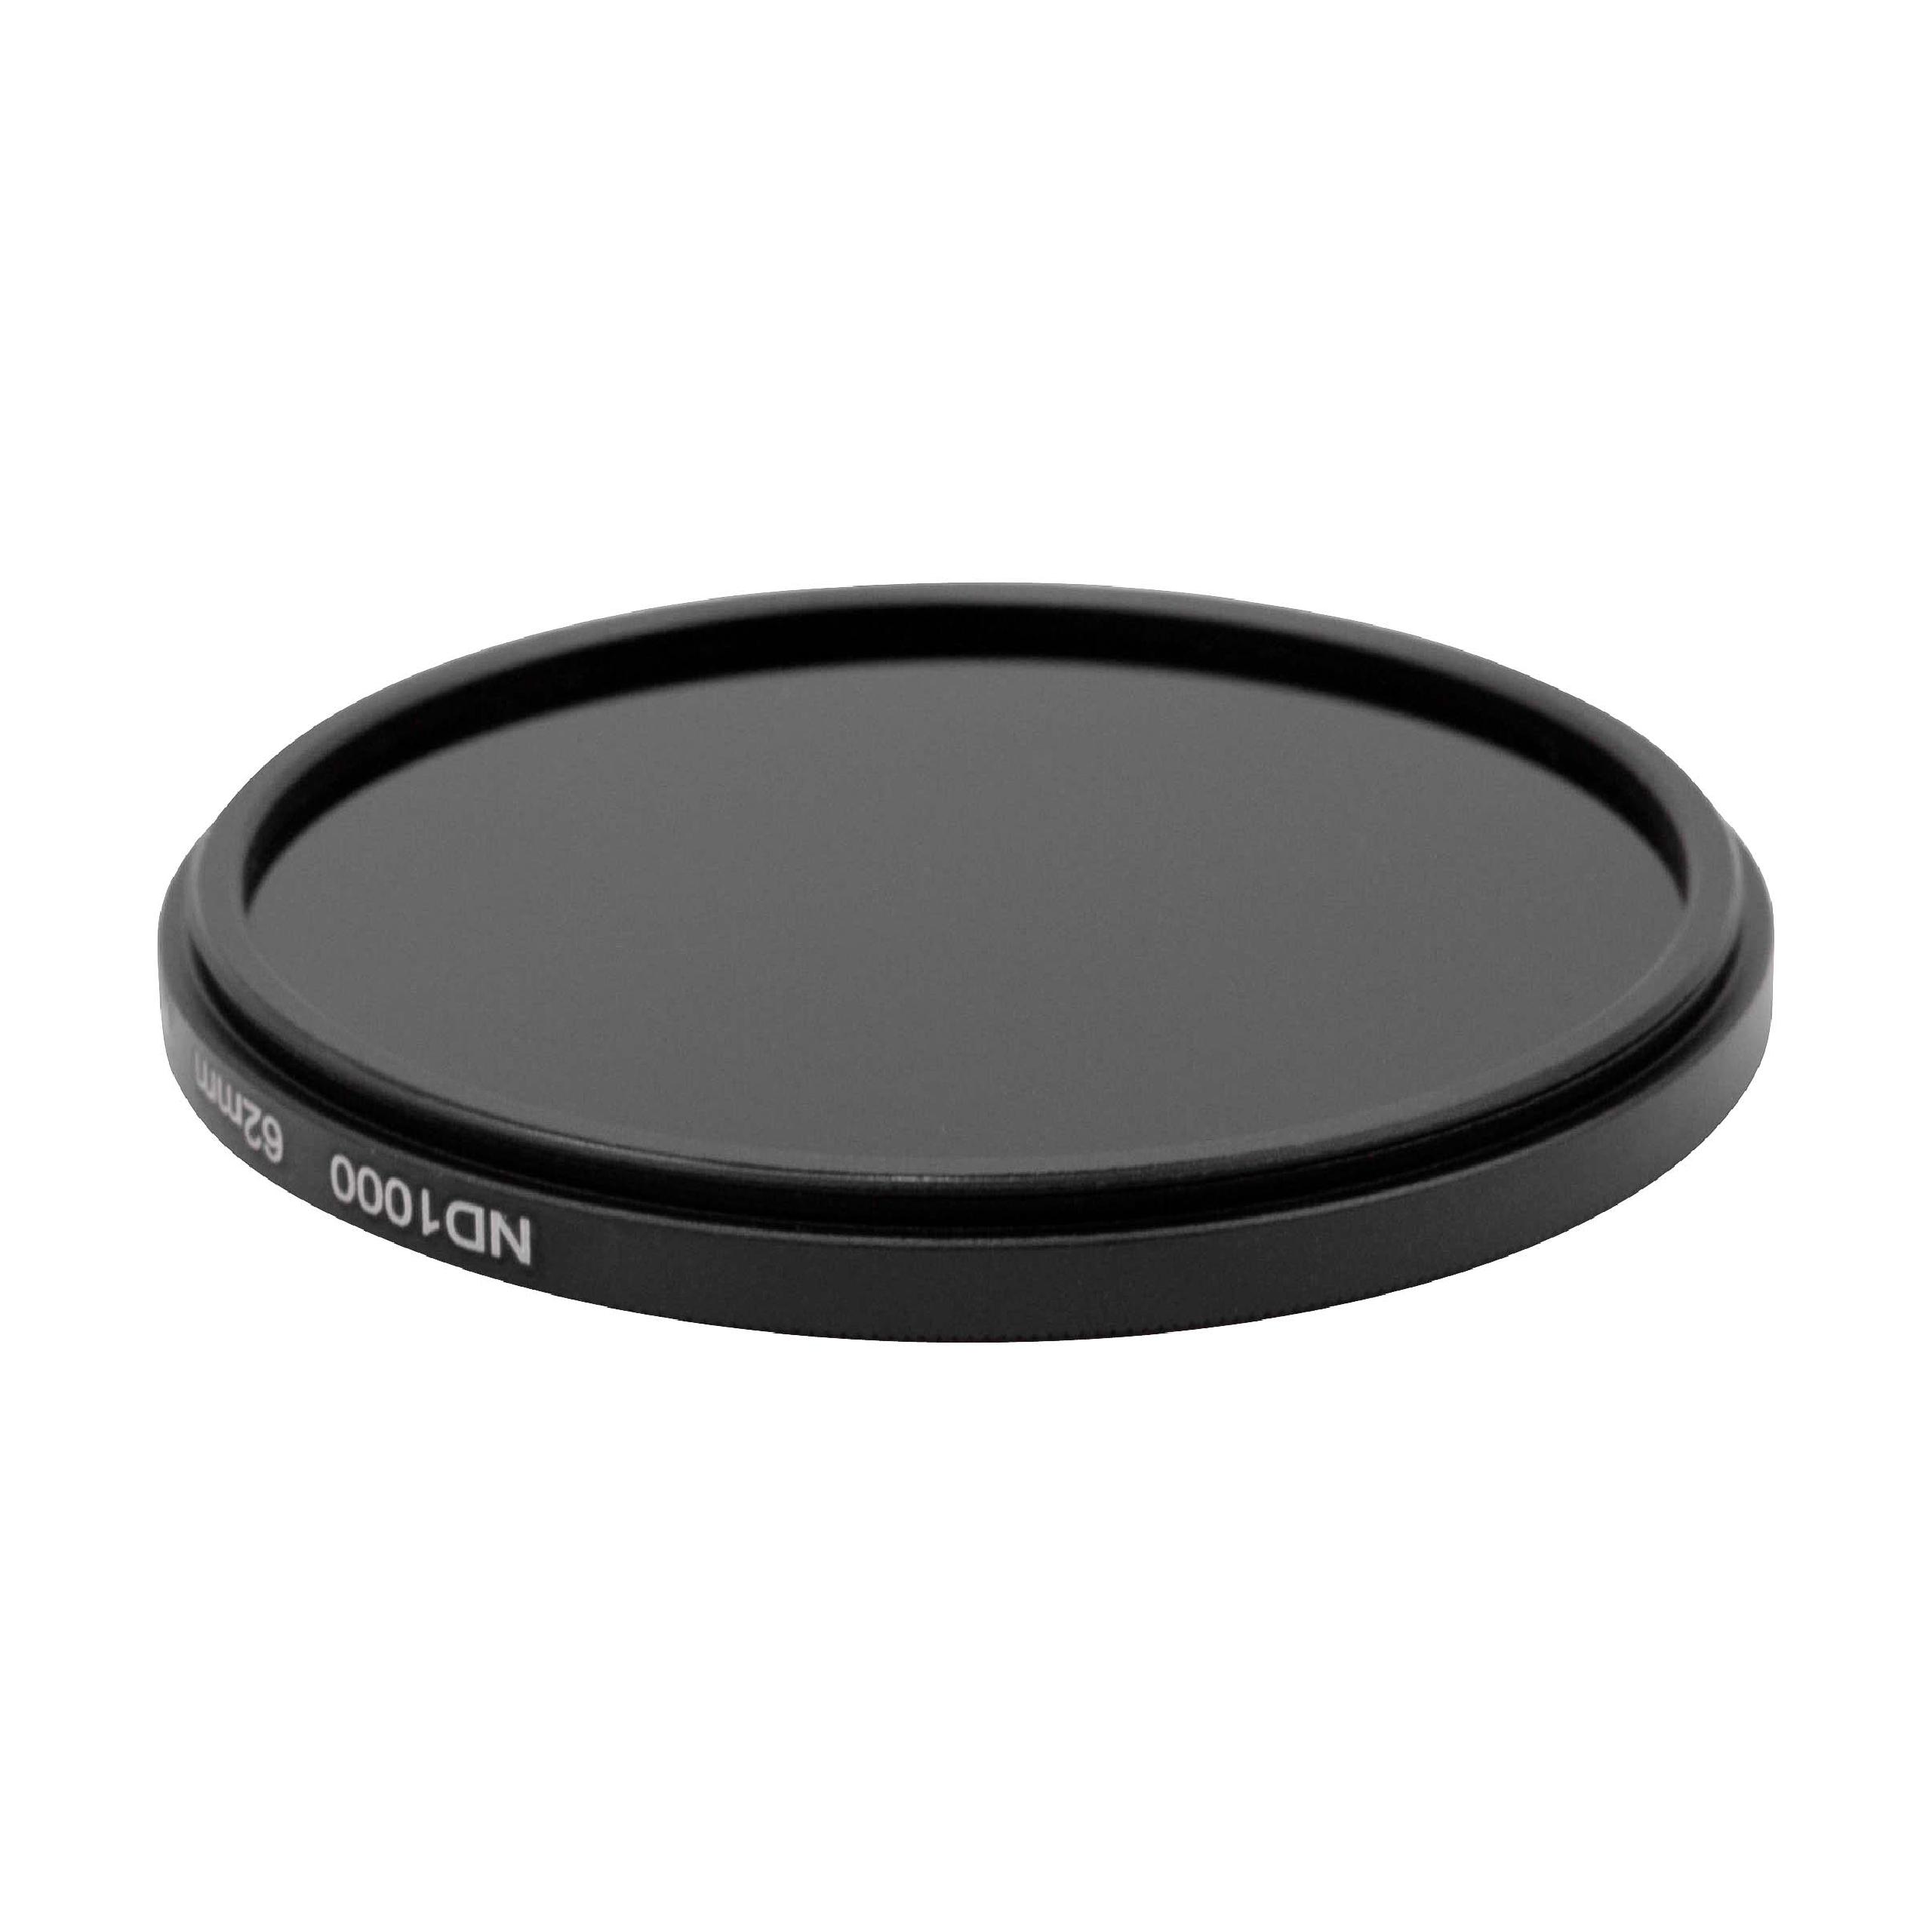 Filtro a densità neutra universale ND 1000 compatibile con obiettivi con filettatura 62 mm - Filtro grigio